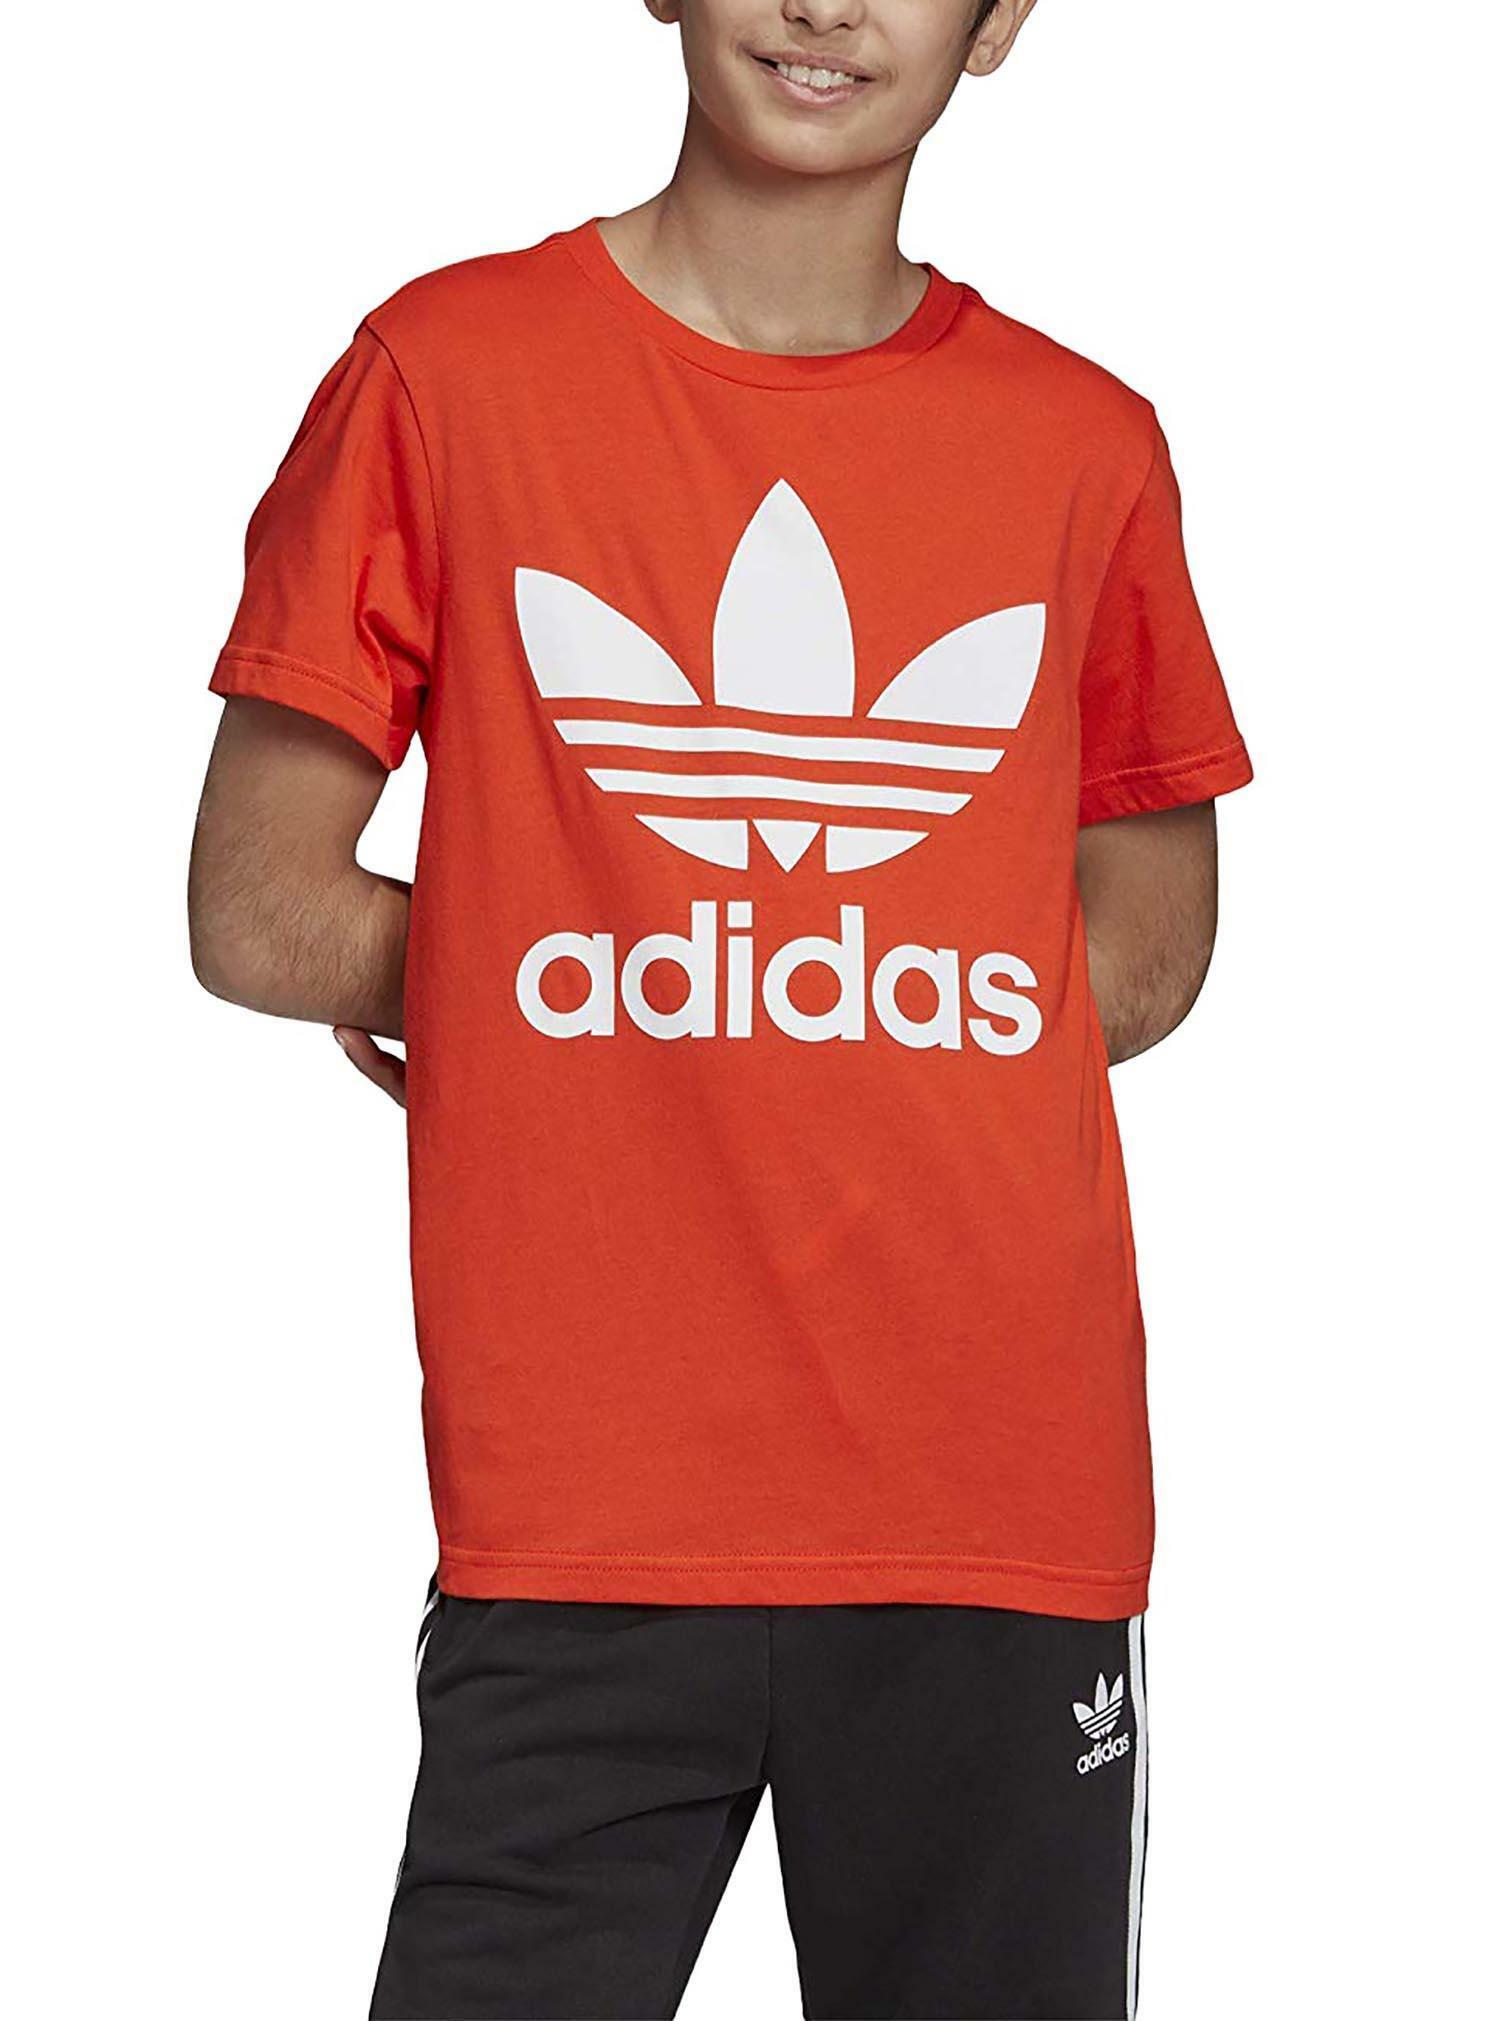 adidas adidas trefoil tee t-shirt bambino arancione dv2907